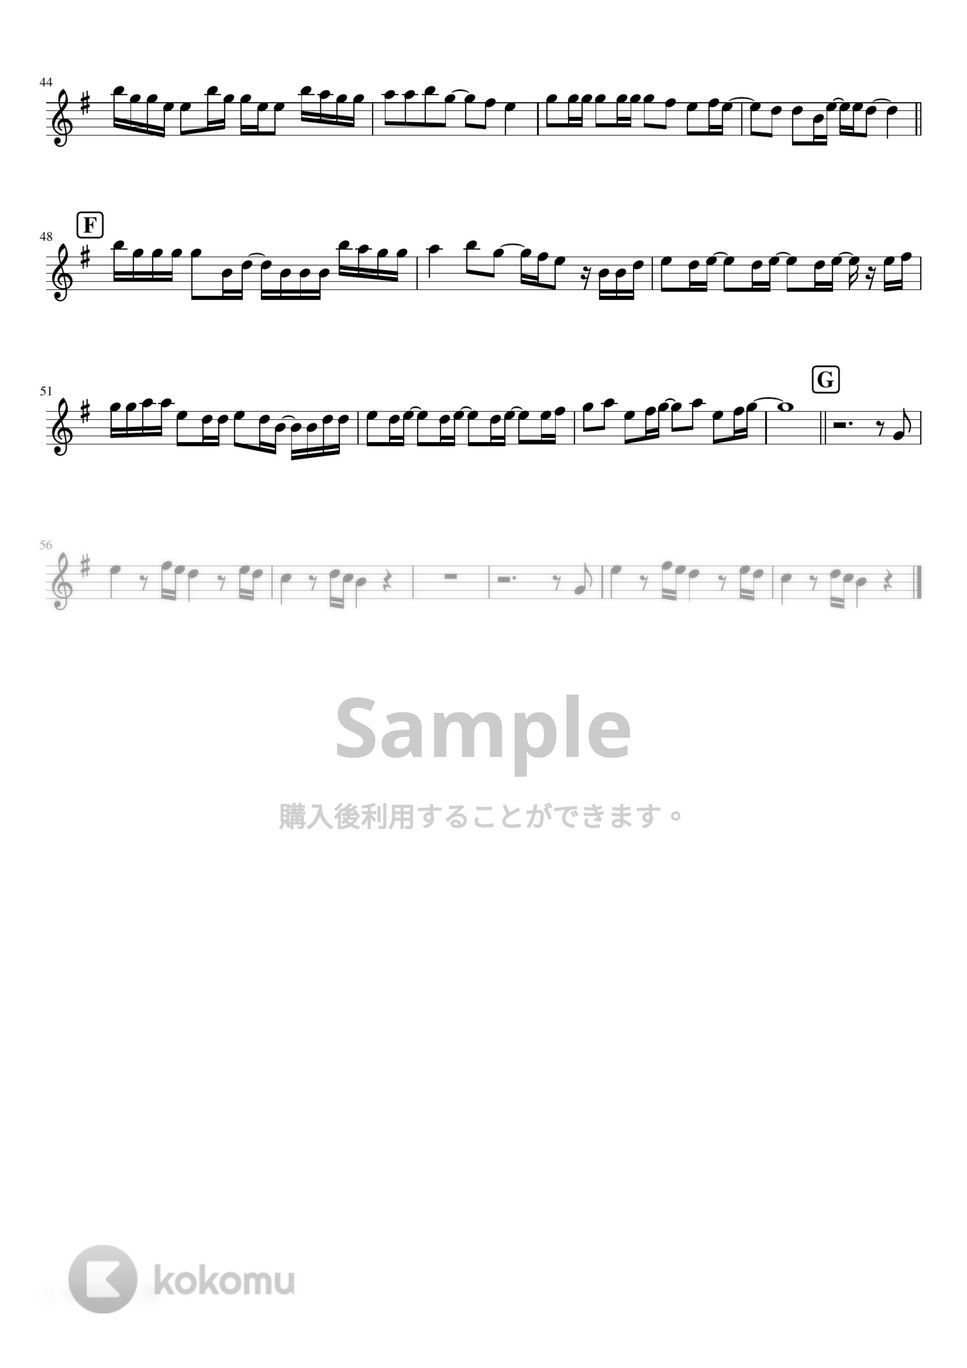 サンボマスター - ラブソング (inＣ) by はまなす